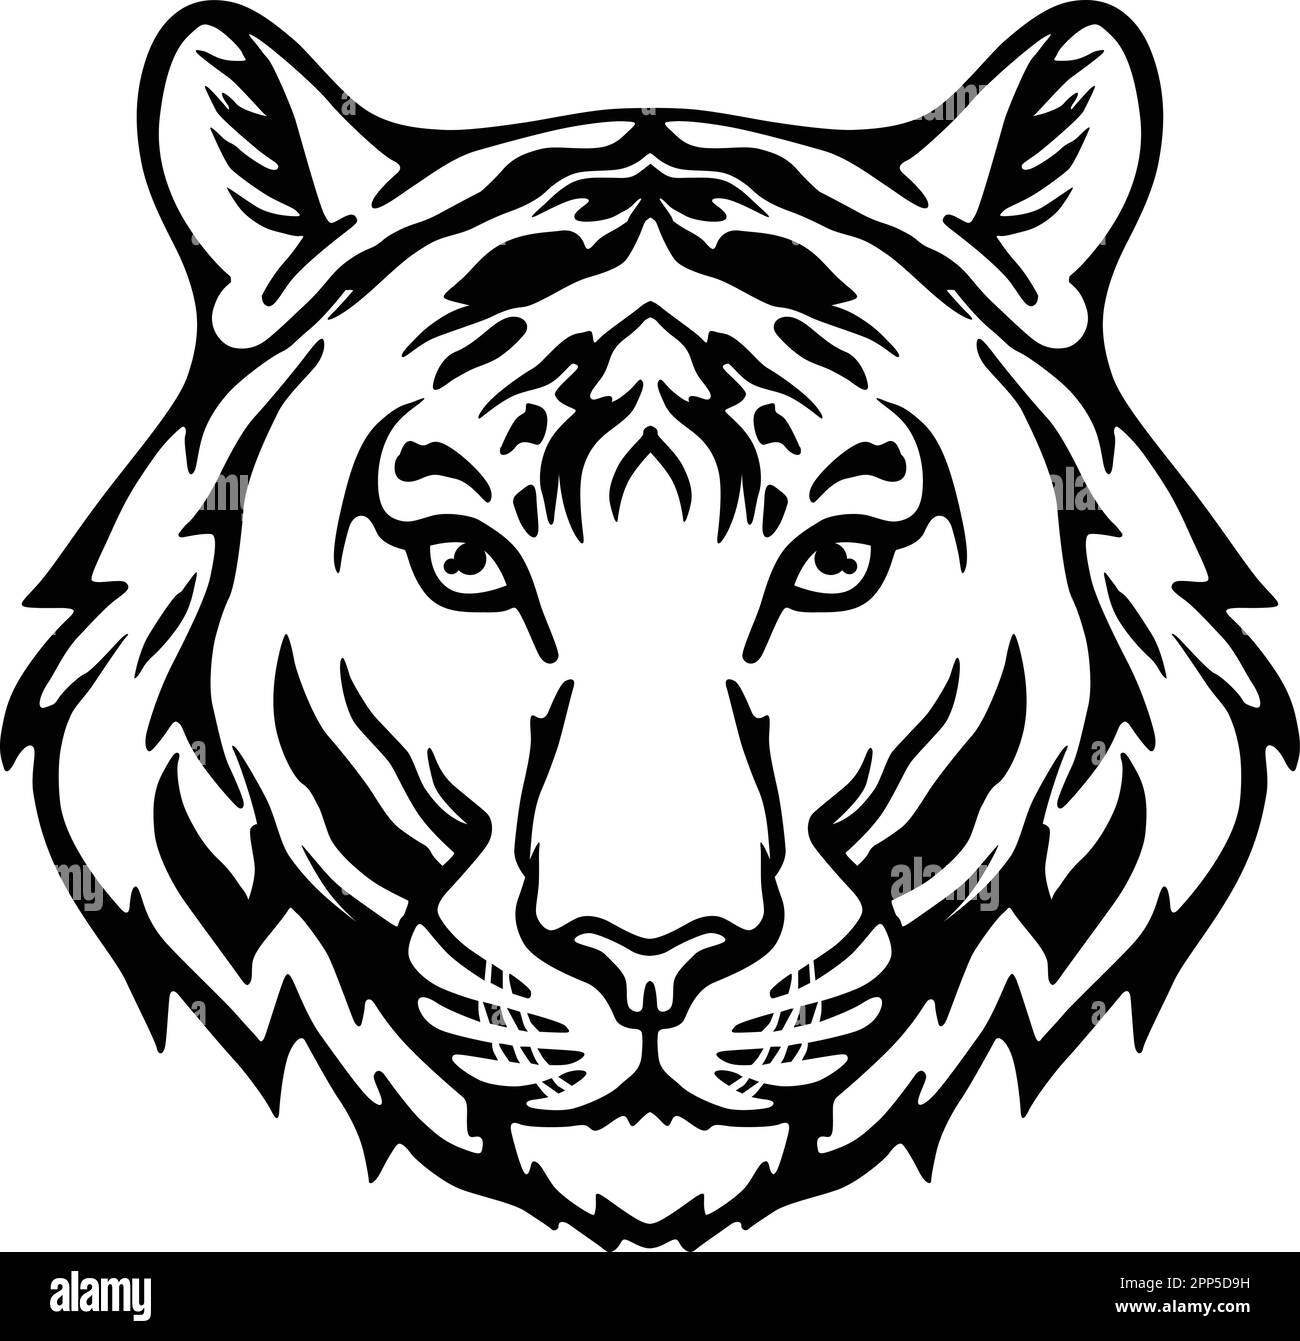 Tiger Face Expression Illustration. Tattoo Art. Vector Stock Vector ...